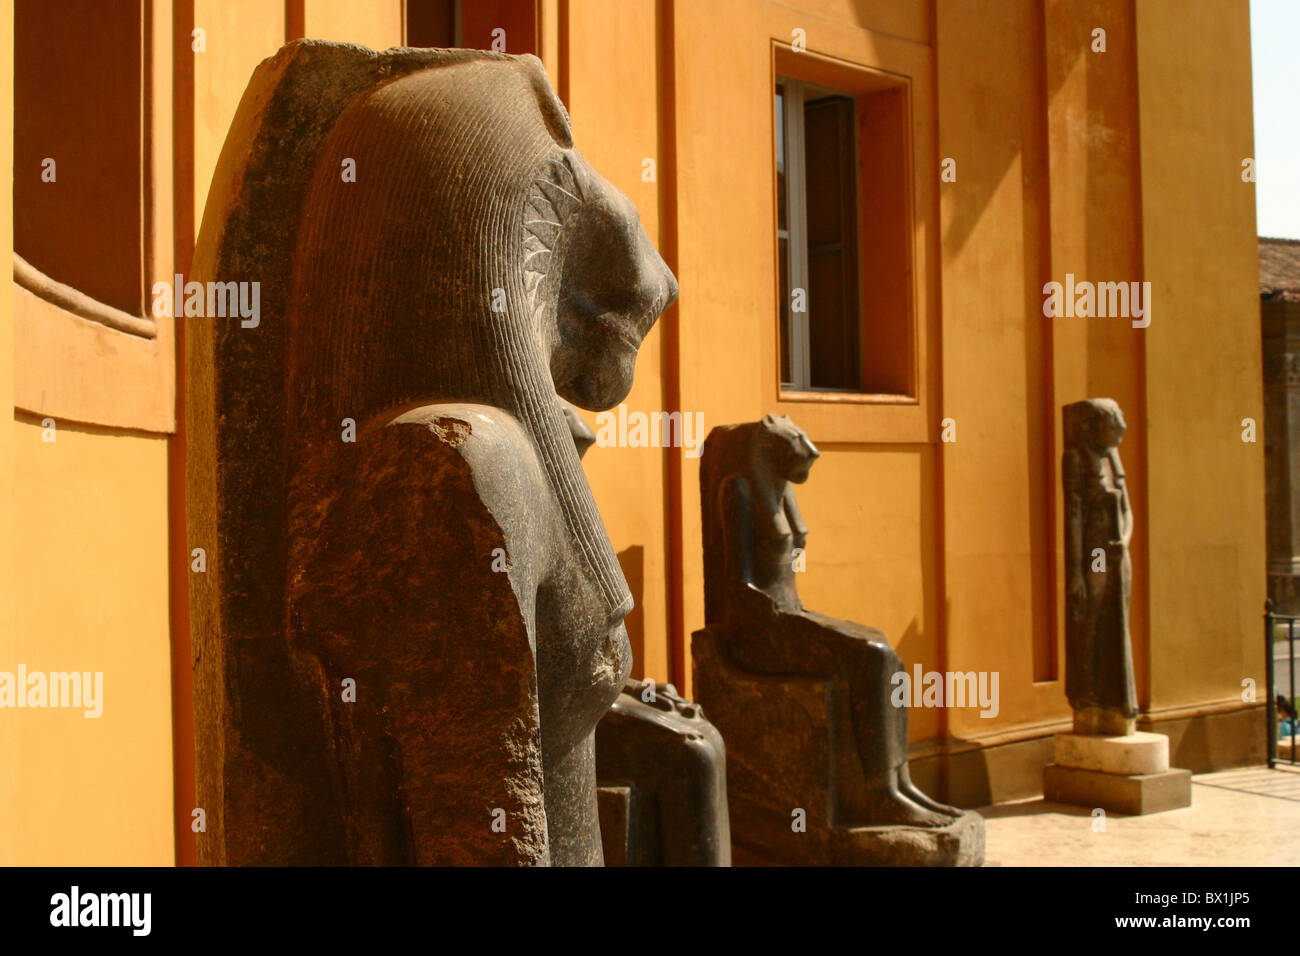 Statue egiziane all'interno di musei vaticani, Vaticano, Roma, Italia Foto Stock